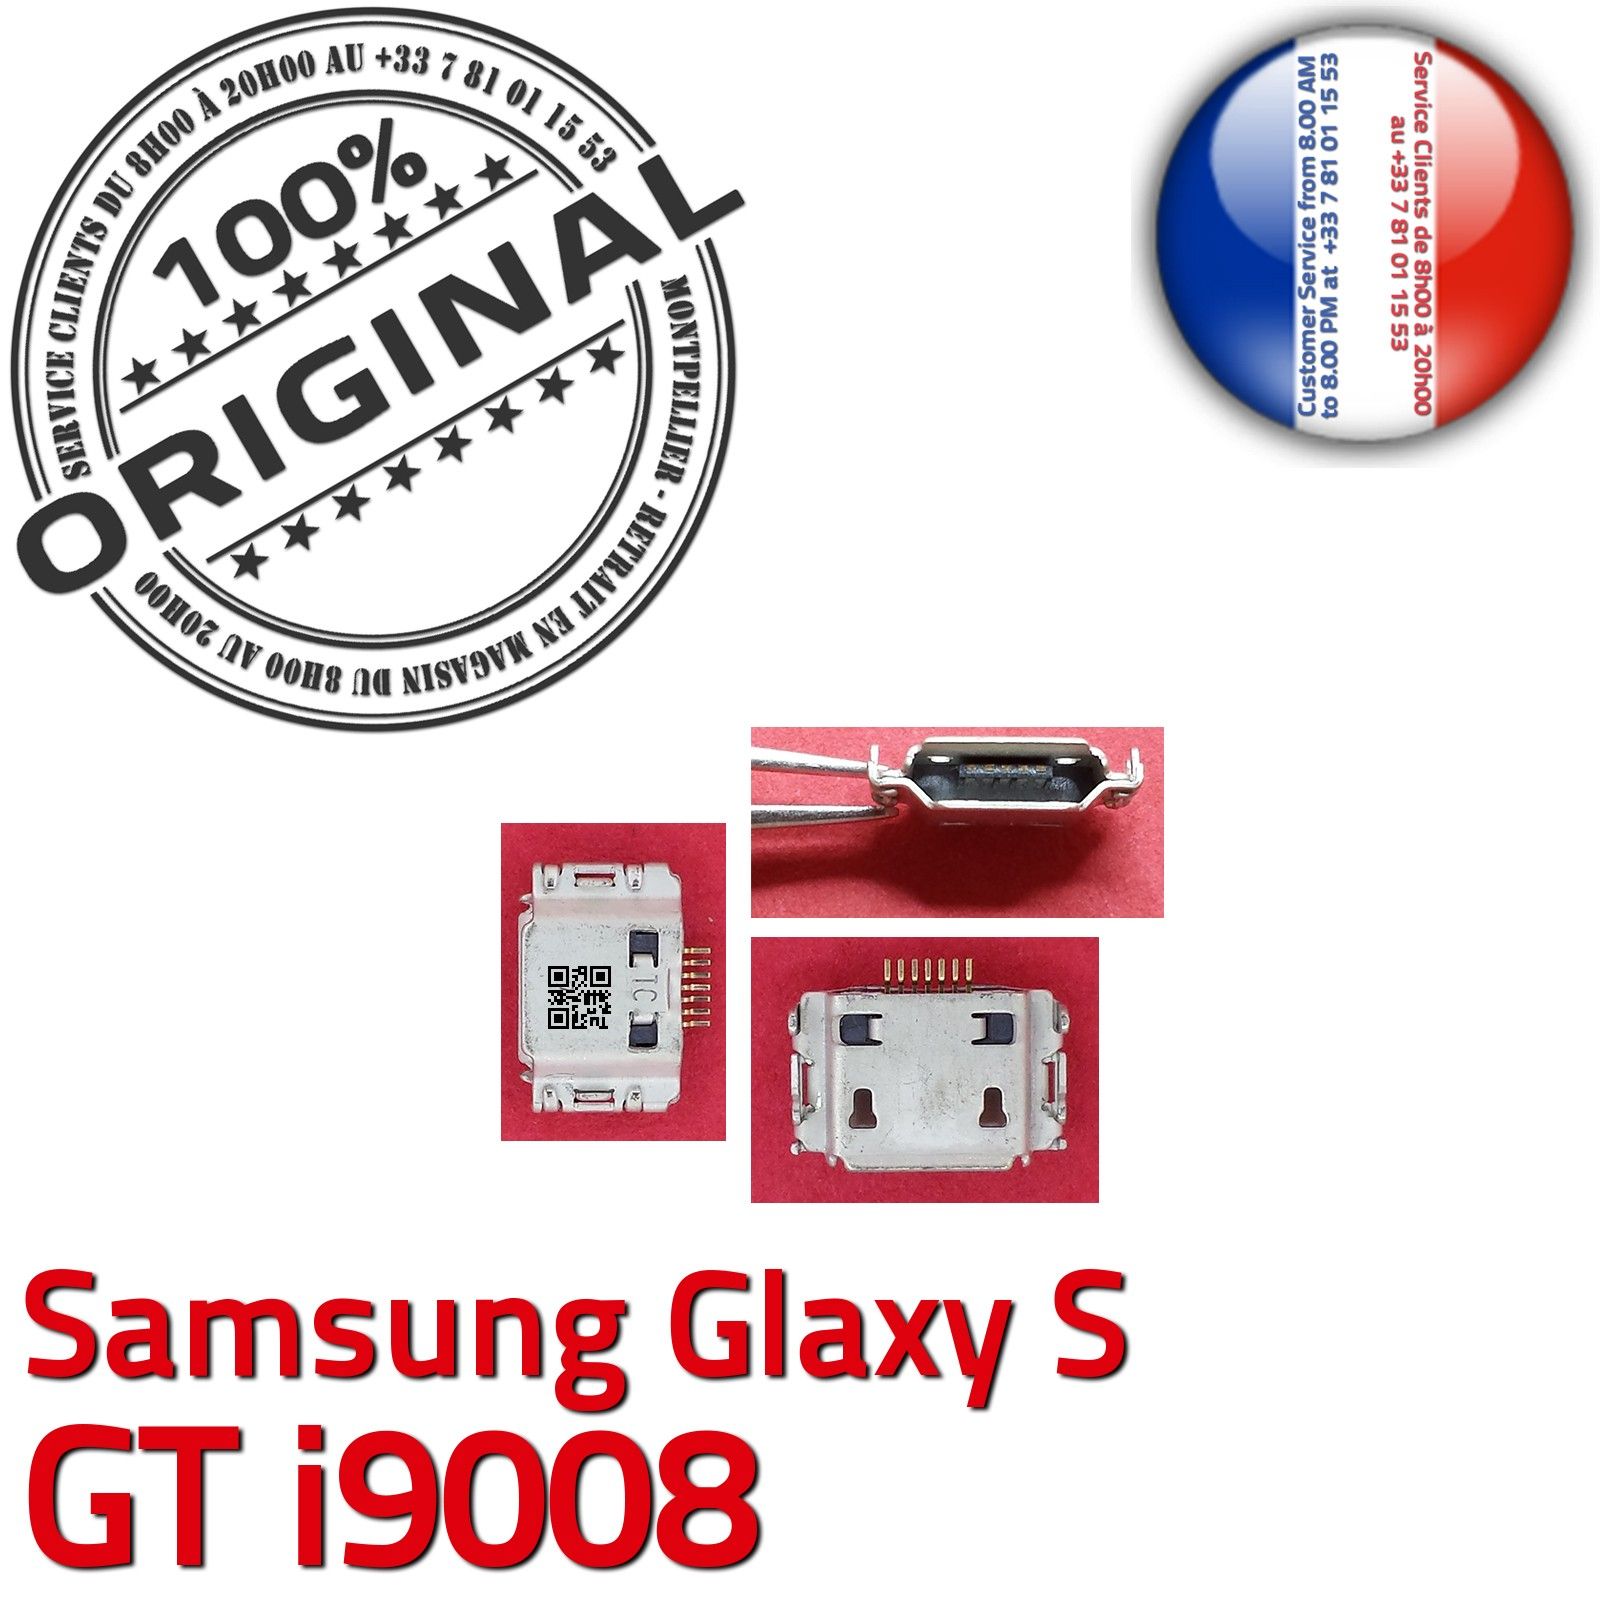 ORIGINAL Samsung Galaxy S GT i9008 Connecteur de charge à souder Micro USB Pins Dorés Dock Prise Flex Connector Chargeur